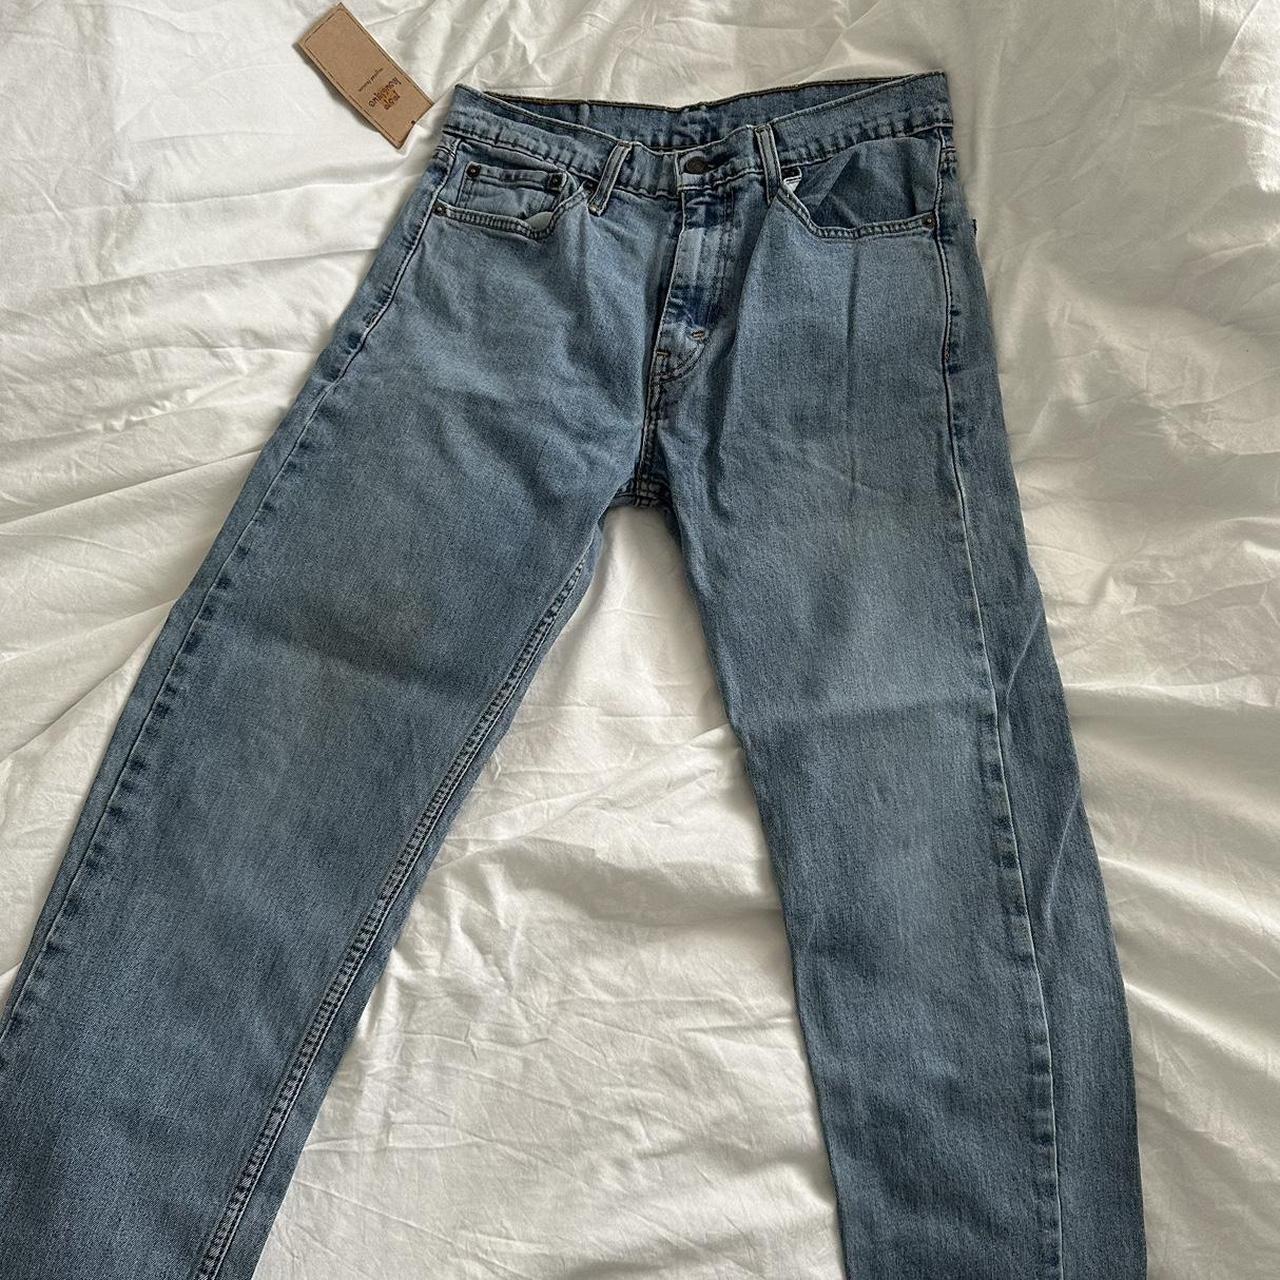 Light wash blue denim vintage Levi Jeans. Waist 32... - Depop